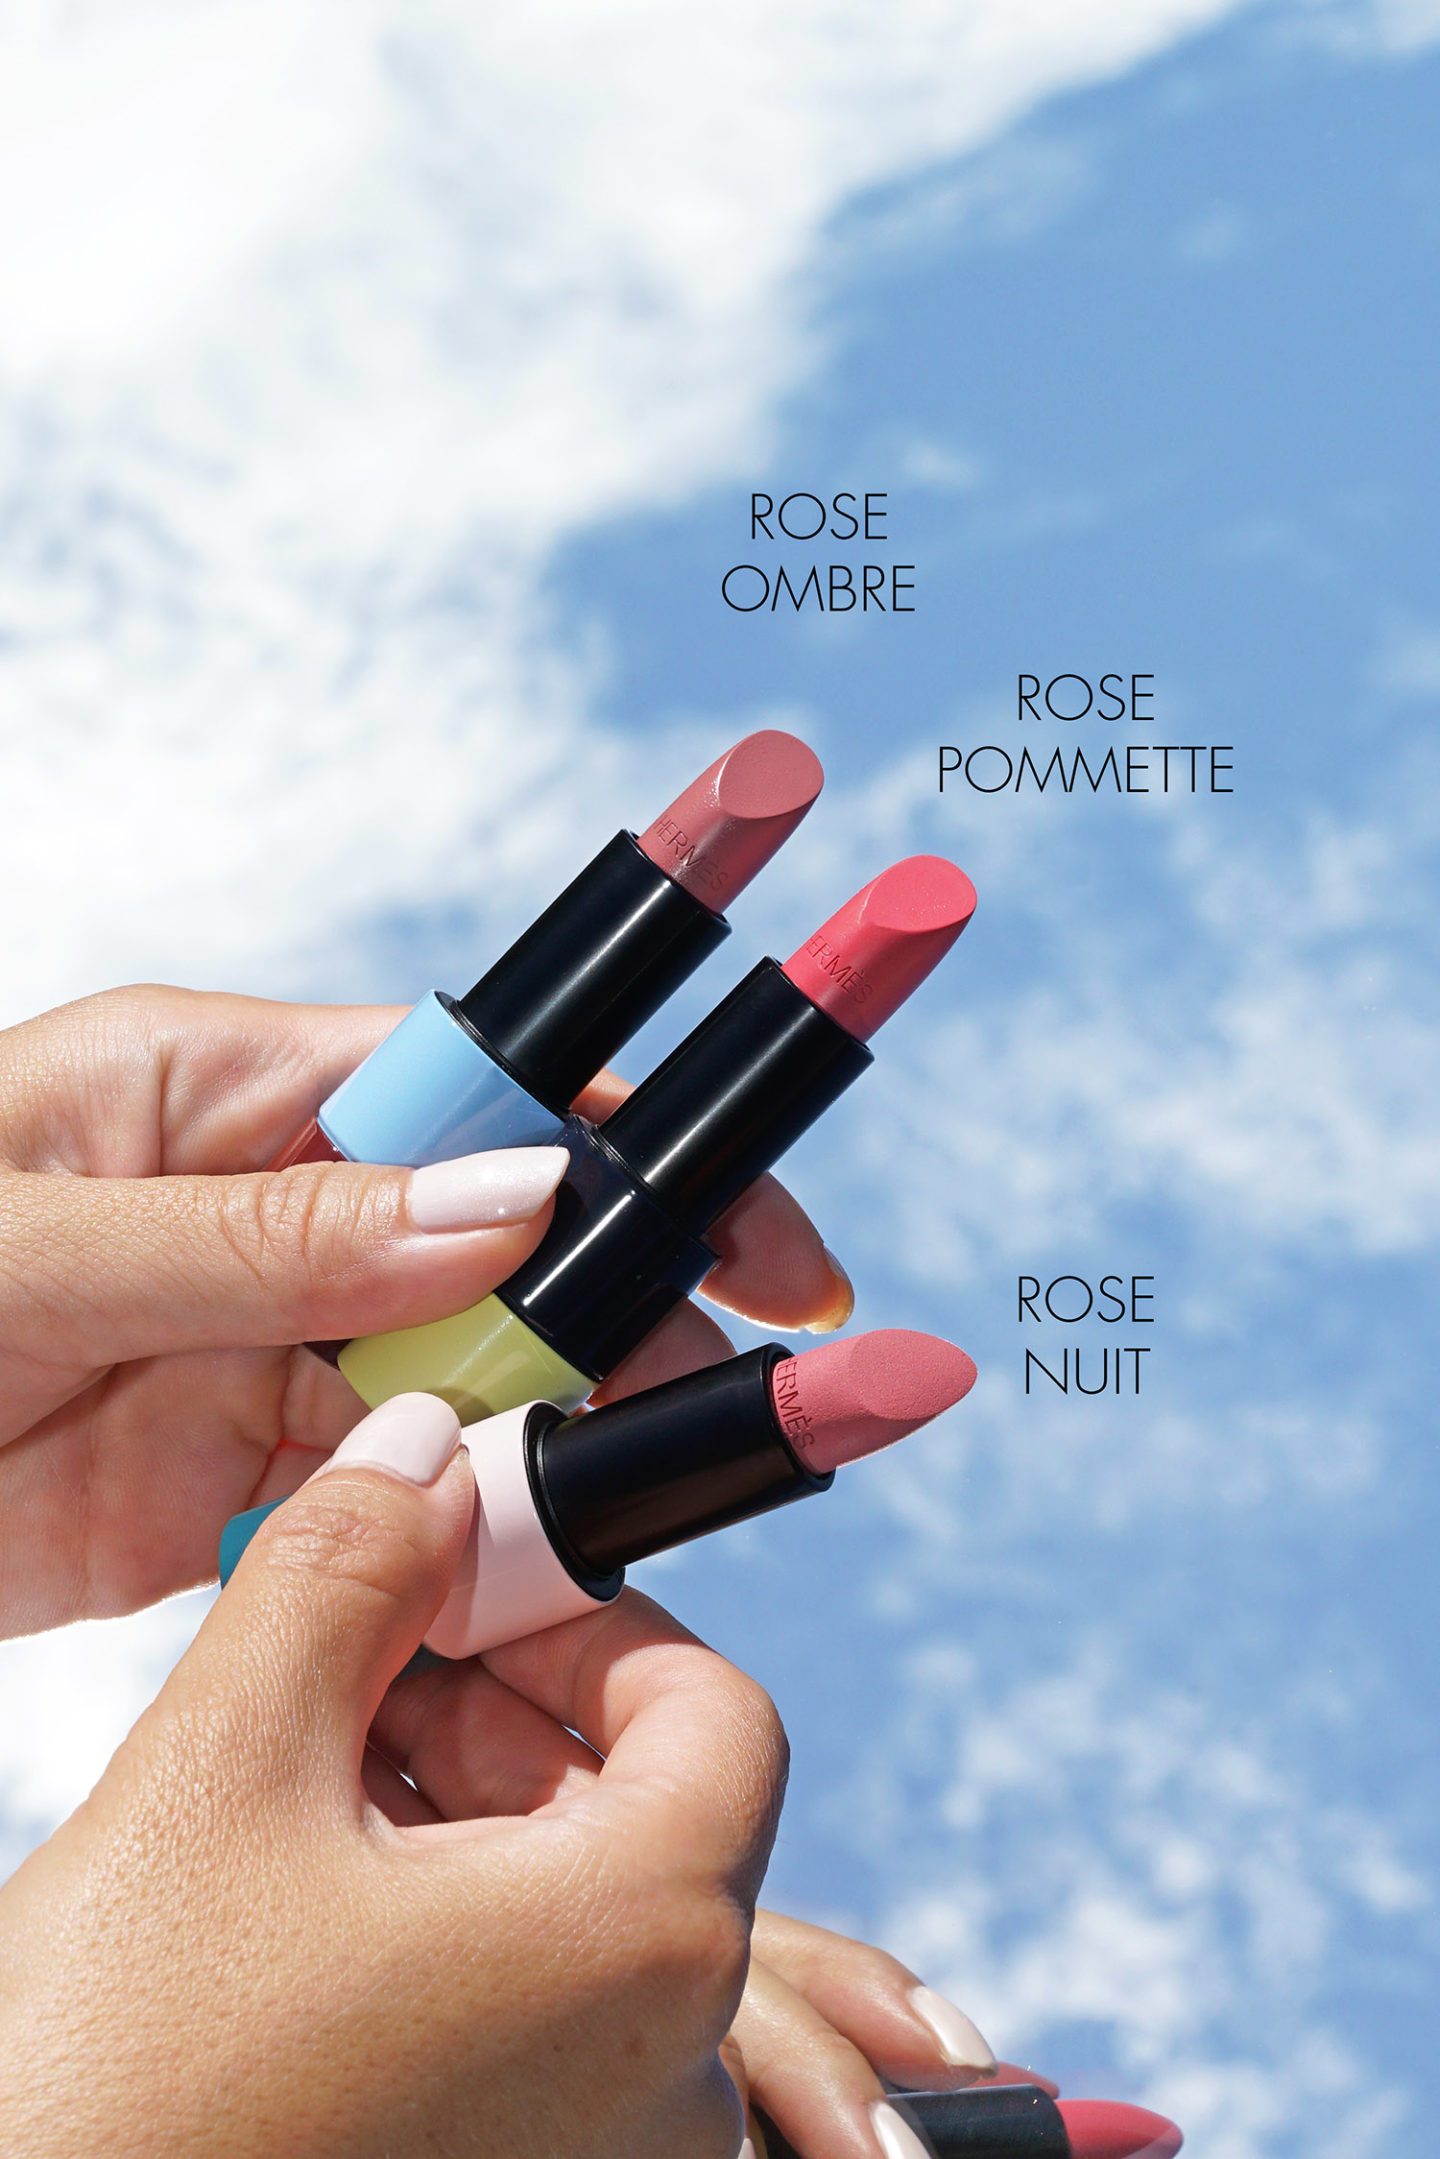 Hermes Lipsticks Fall 2020 Rose Ombre, Pommette, Nuit